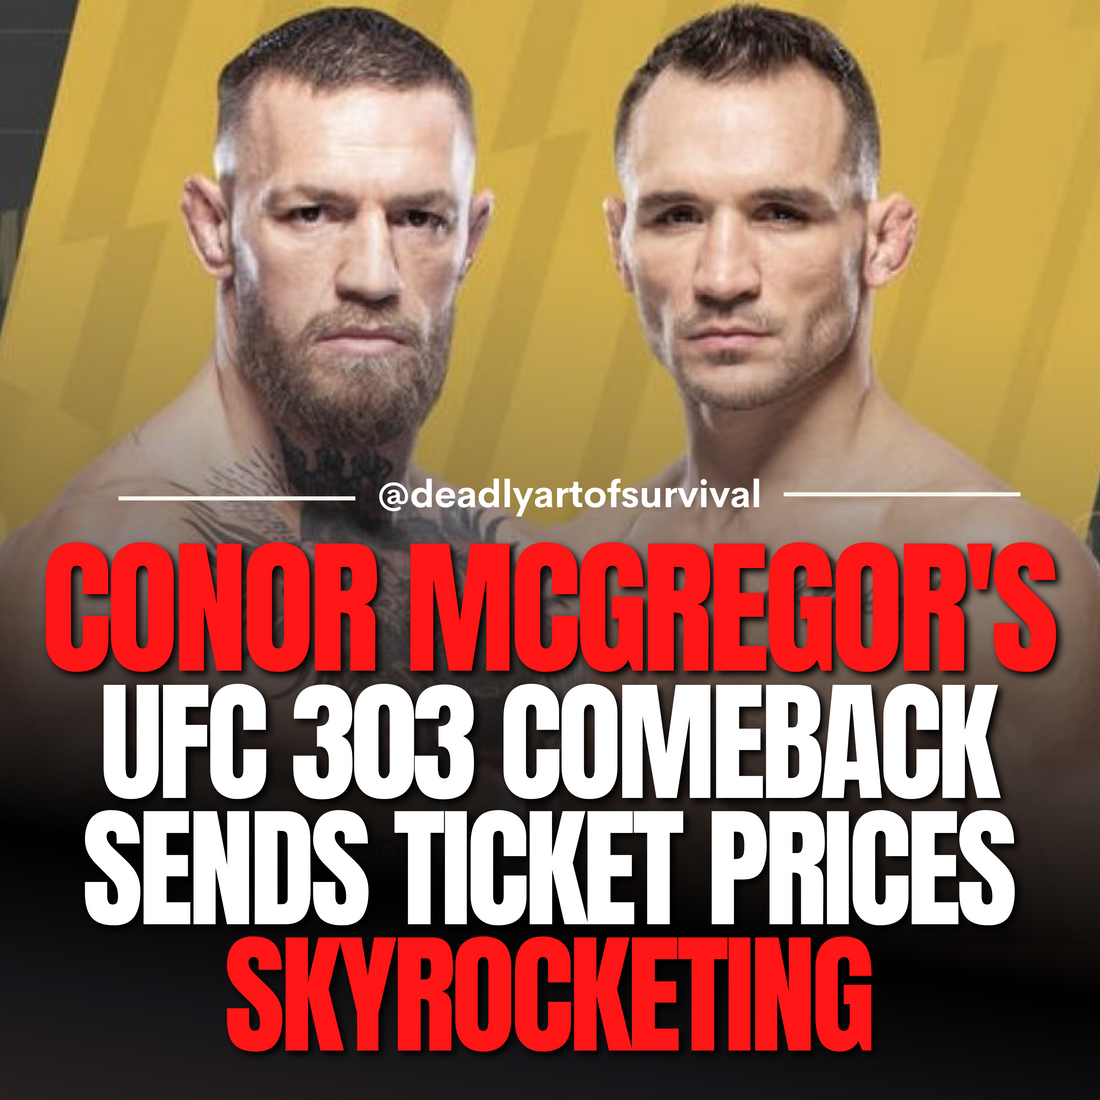 Conor-McGregor-s-UFC-303-Comeback-Sends-Ticket-Prices-Skyrocketing deadlyartofsurvival.com